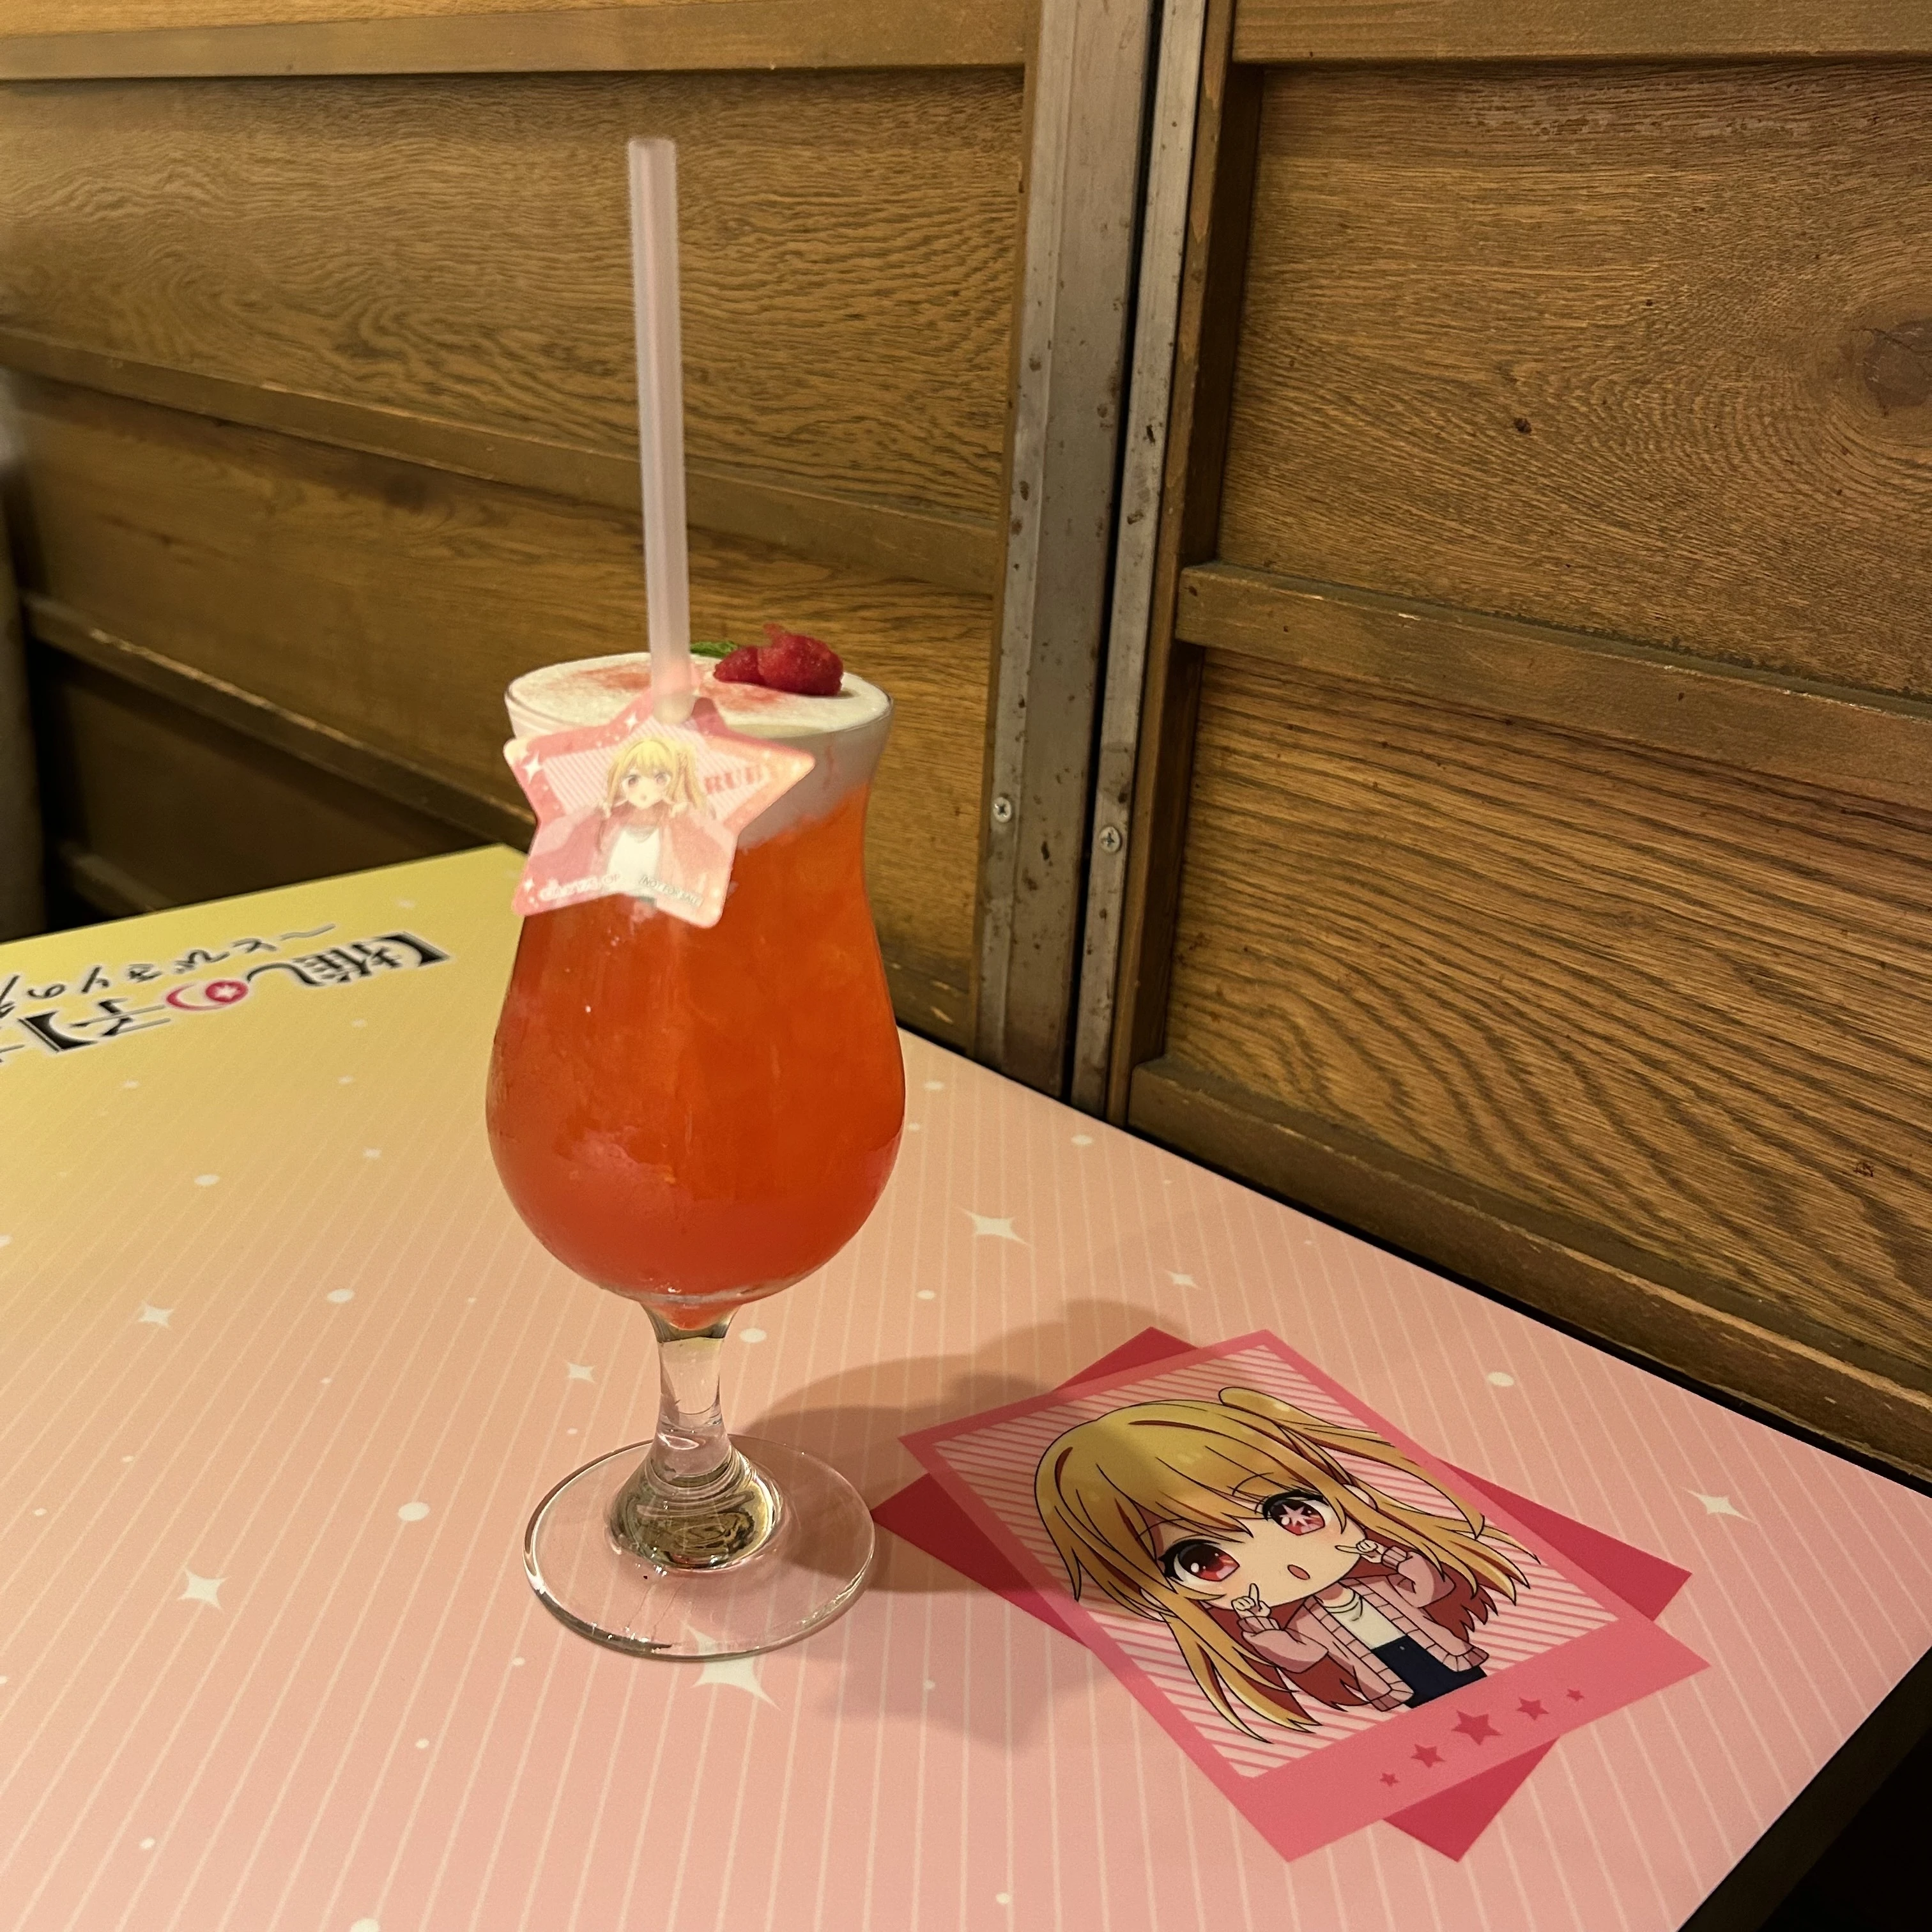 「【推しの子】カフェ〜とびきりの秋♡〜」、推しの子、ルビーのピンクグレープフルーツソーダ